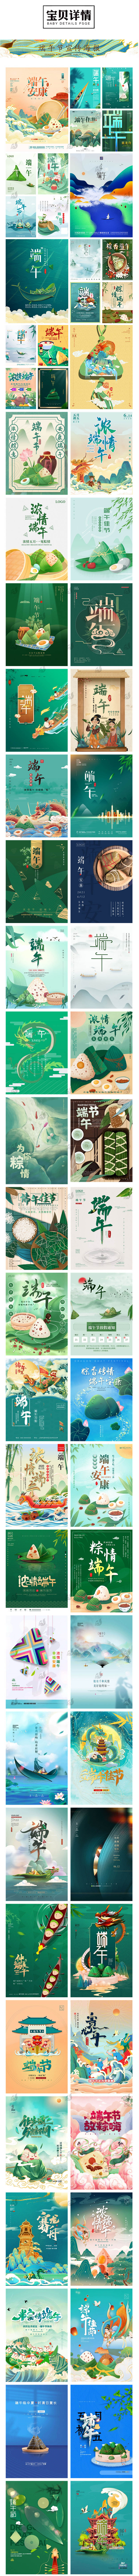 922款中国风传统端午节龙舟粽子电商宣传活动海报背景PSD设计素材模板 设计教程 第2张